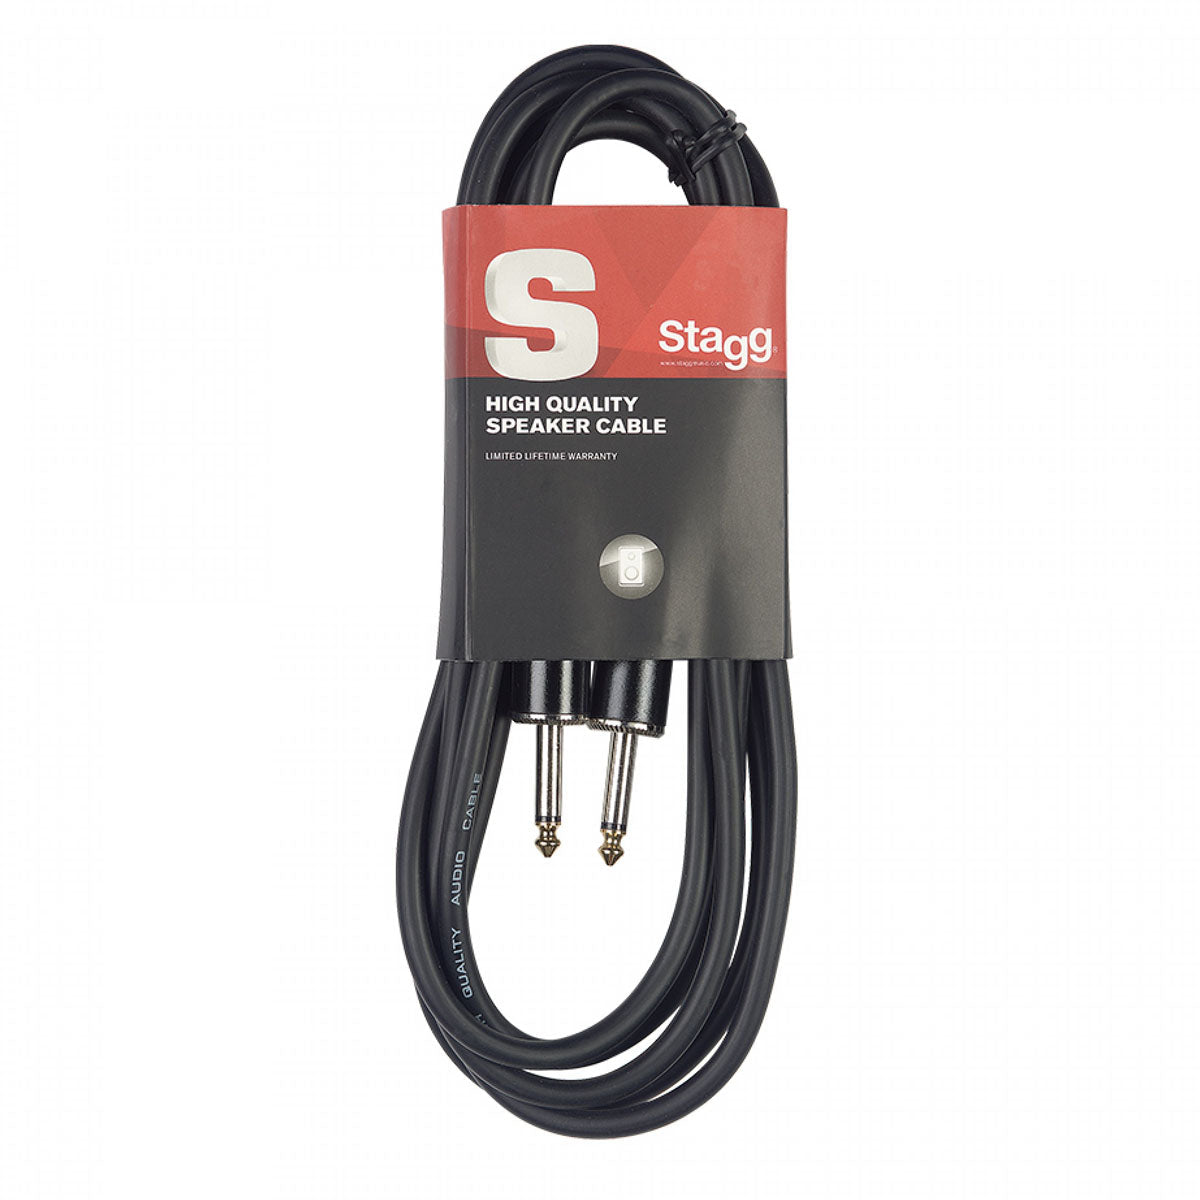 Stagg S-Series Speaker Cable - 1/4" Jack Plug To 1/4" Jack Plug - 16GA